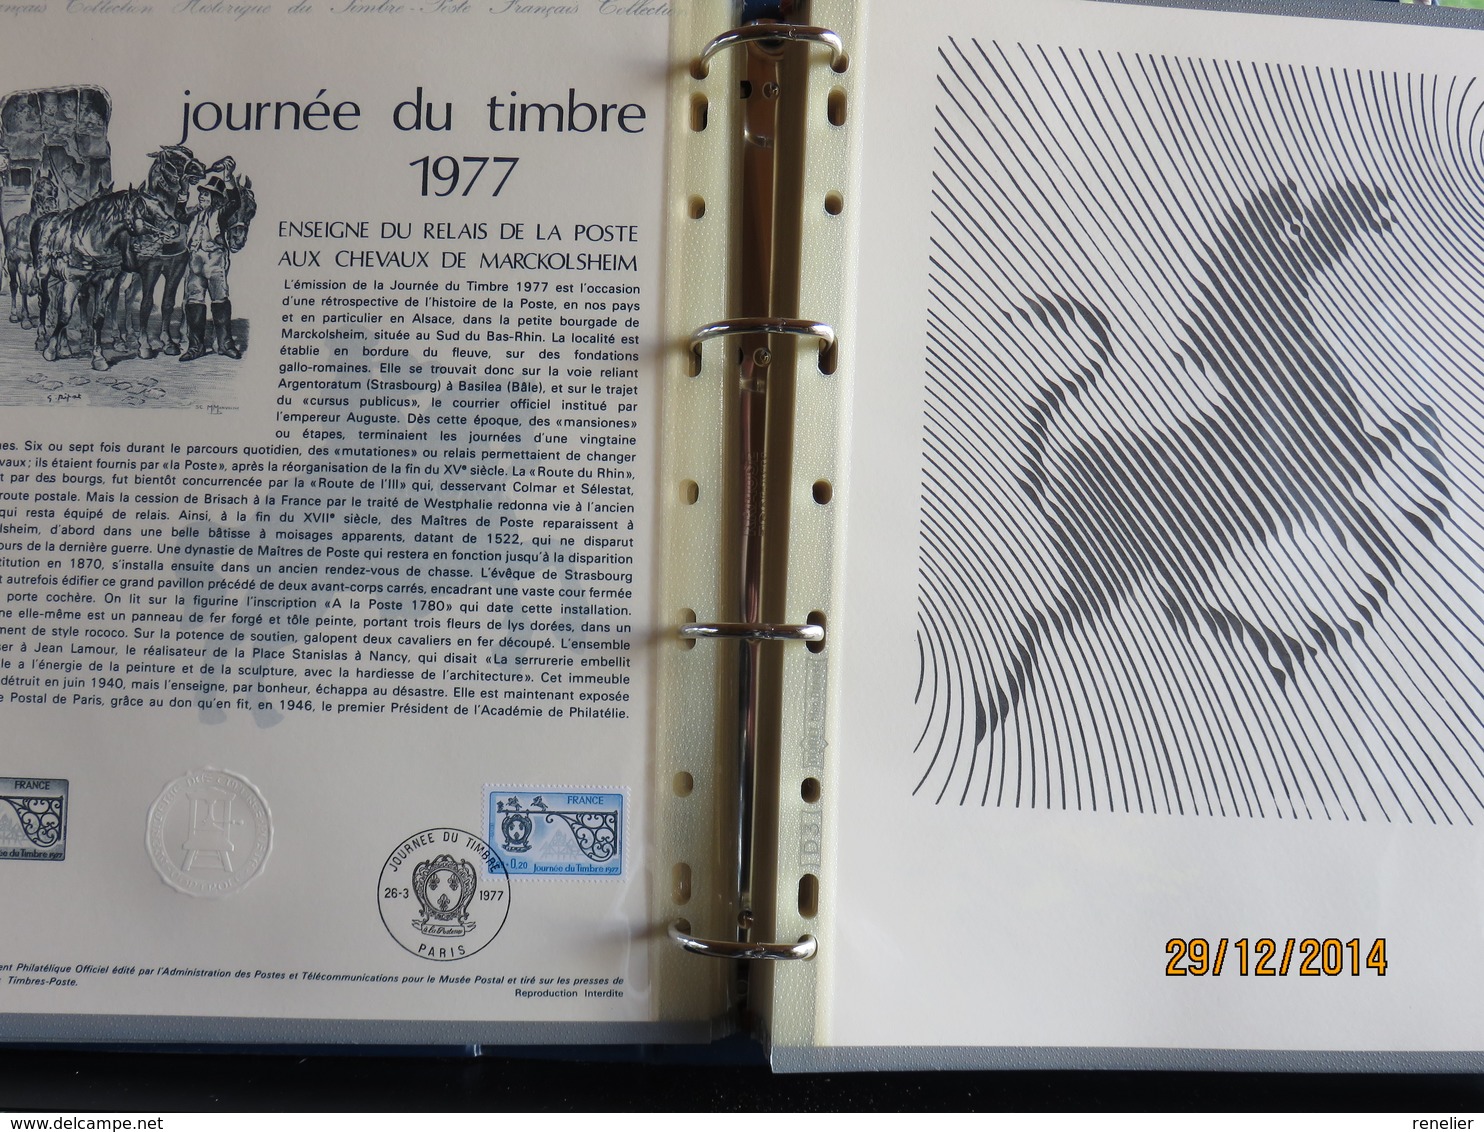 Documents de la Poste - LOT A - Années 1974, 1975, 1976, 1977, 1978 - A prix cassé !